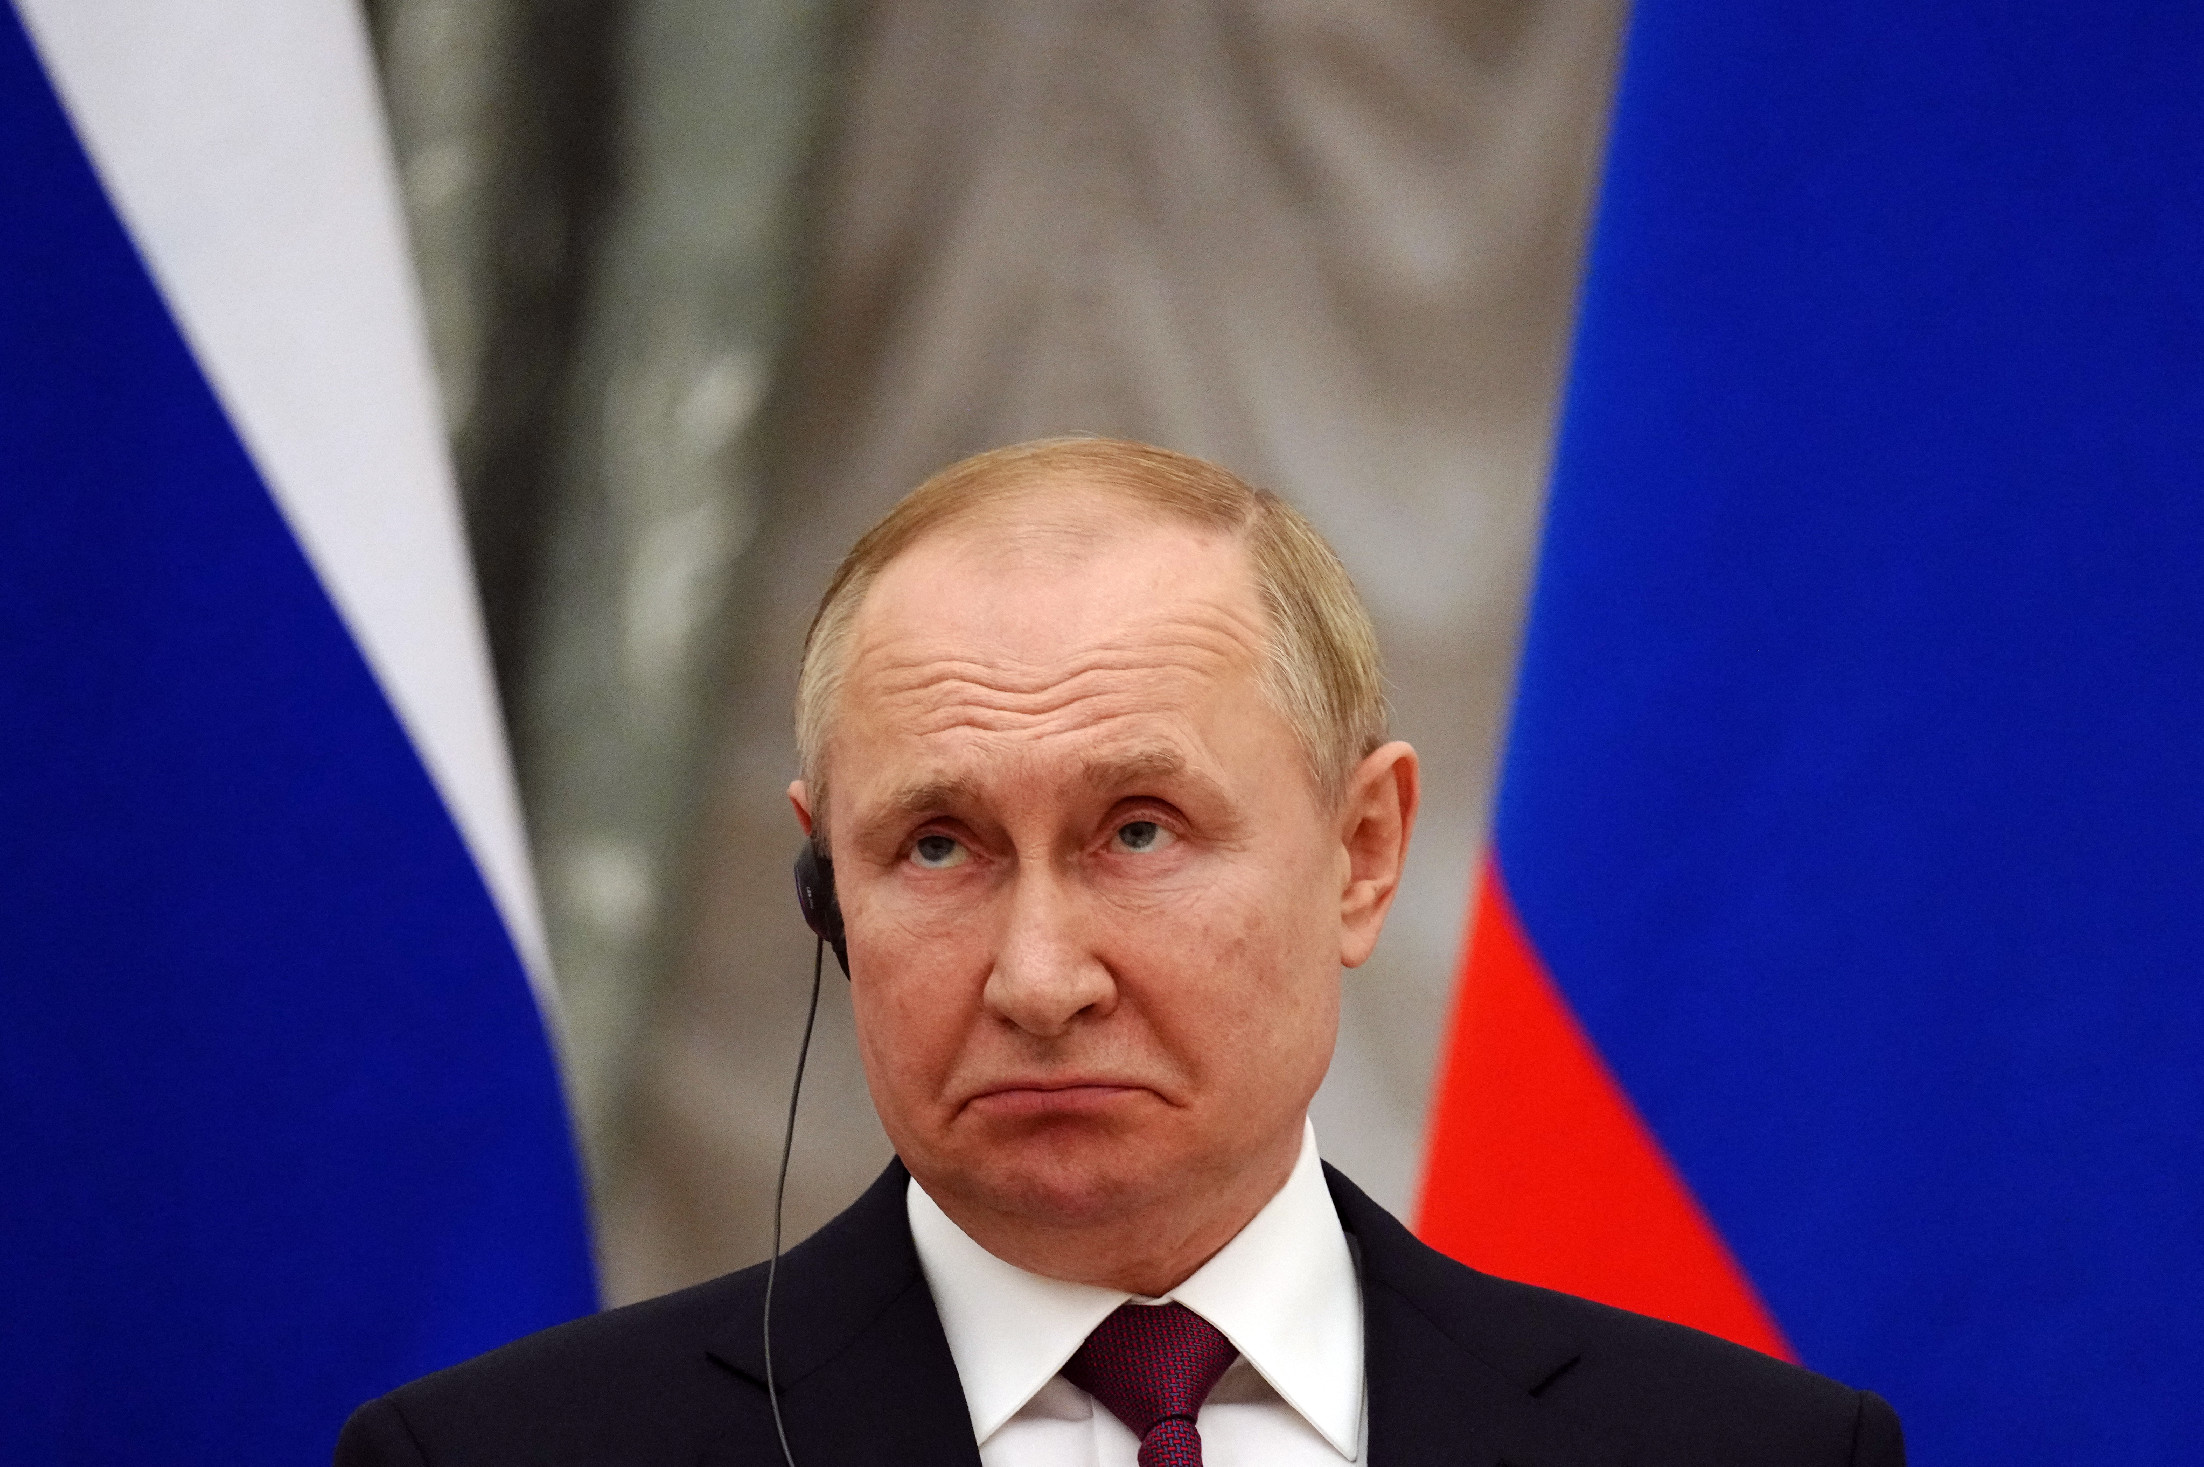 „Putyinnal lehetetlen diplomáciai úton rendezni a konfliktust” – mondta egy volt nagykövet